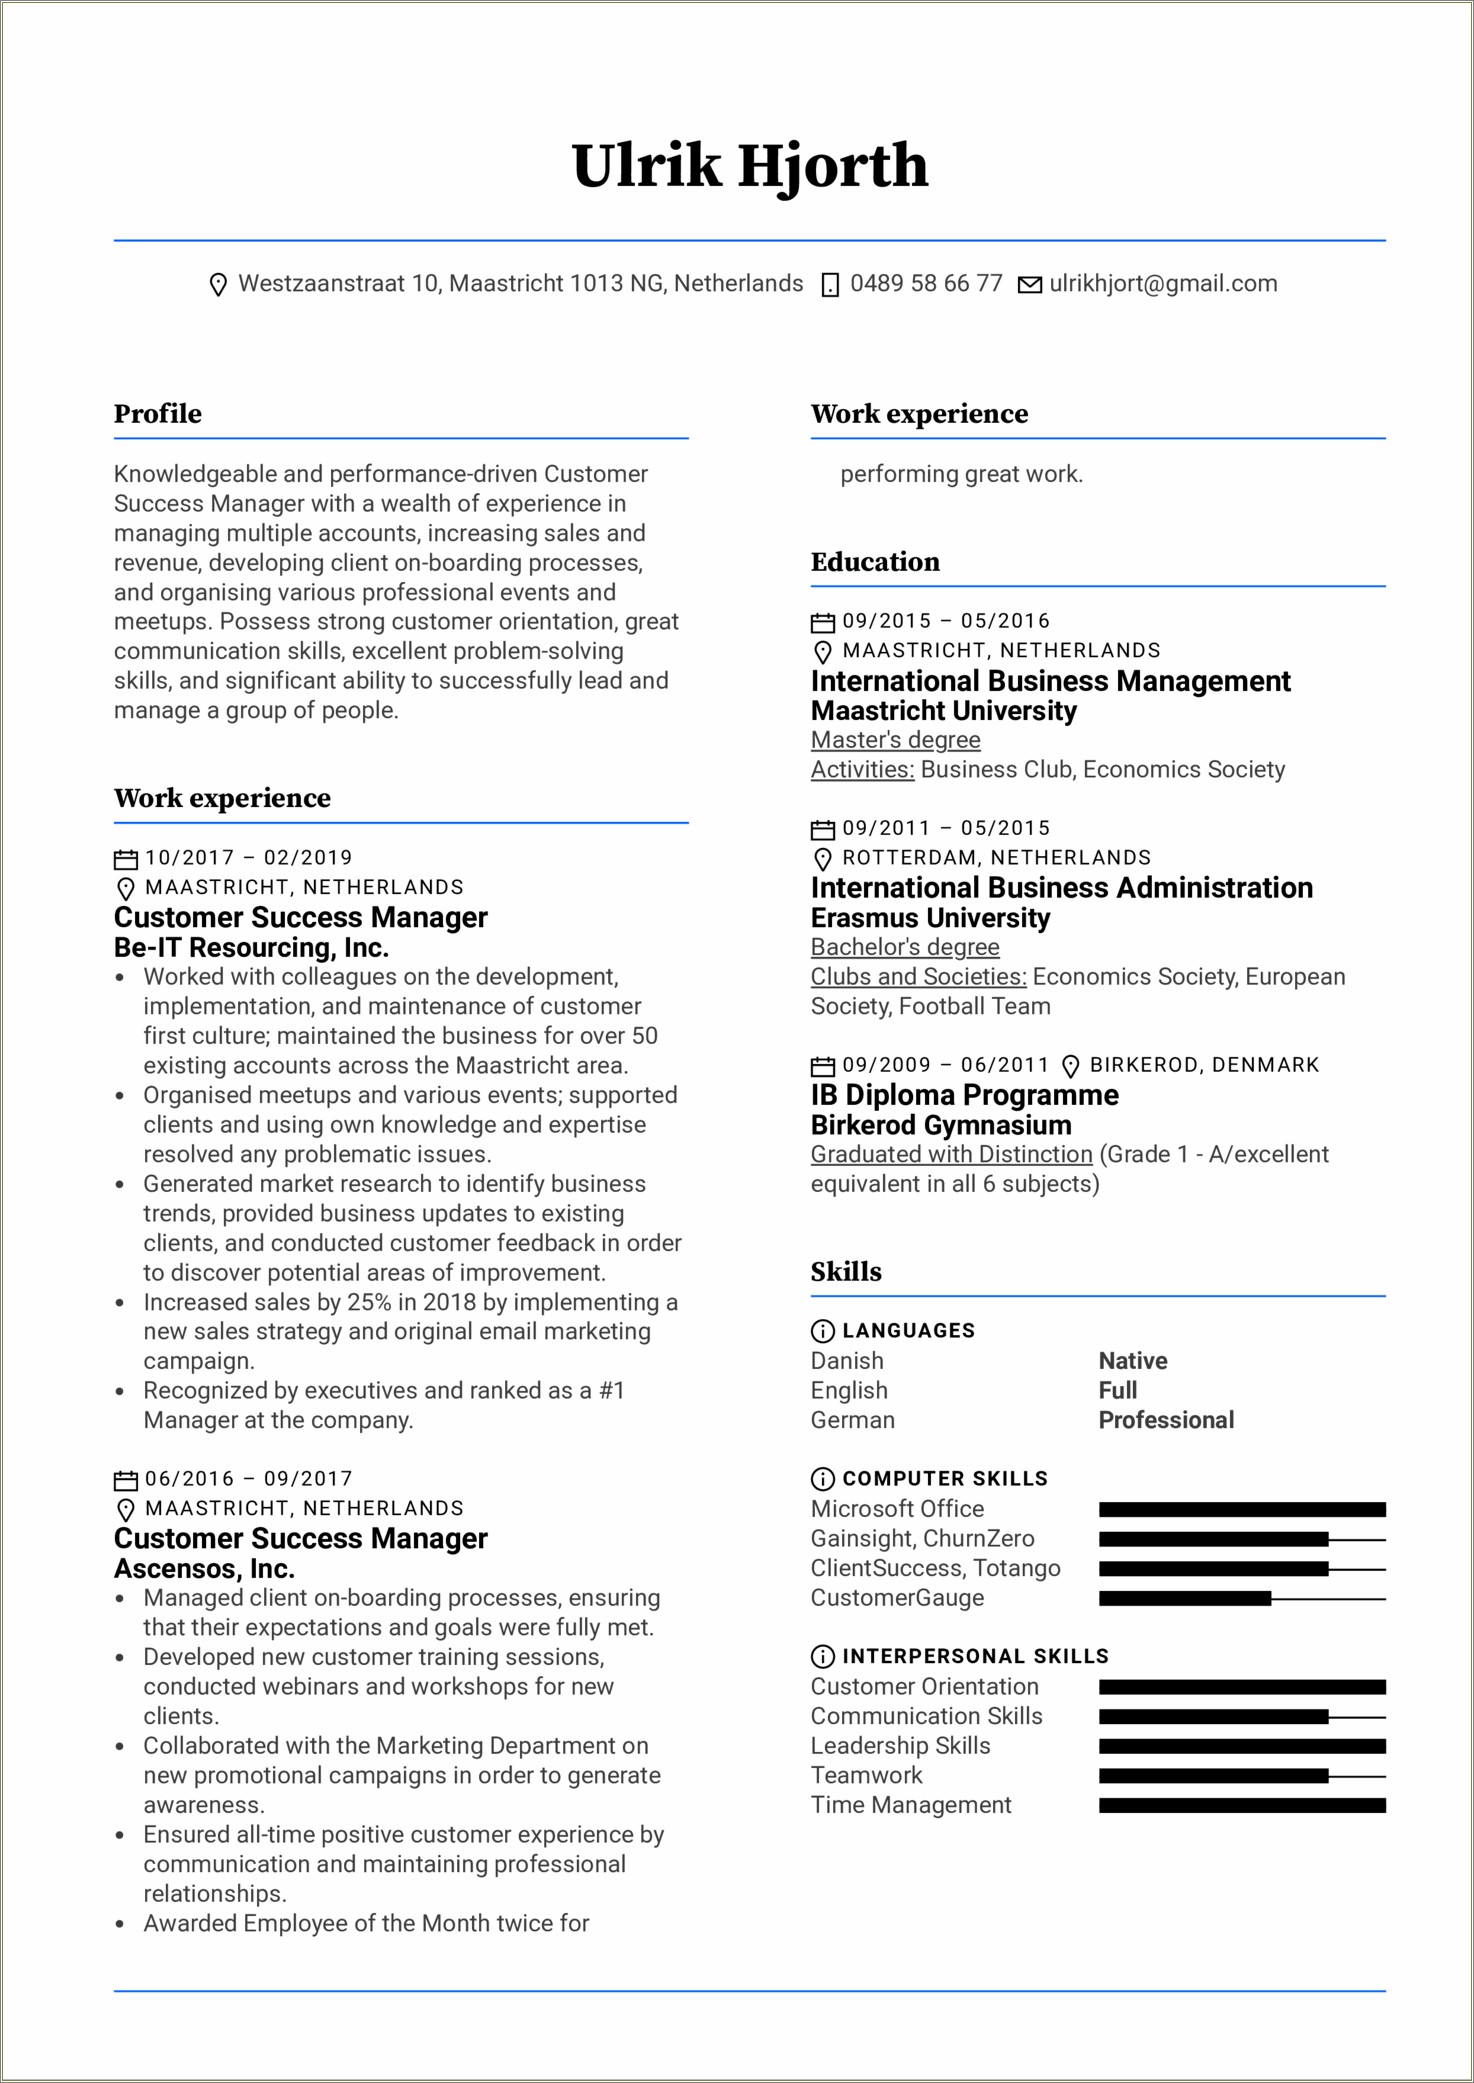 Sample Resume Objective For Master's Program